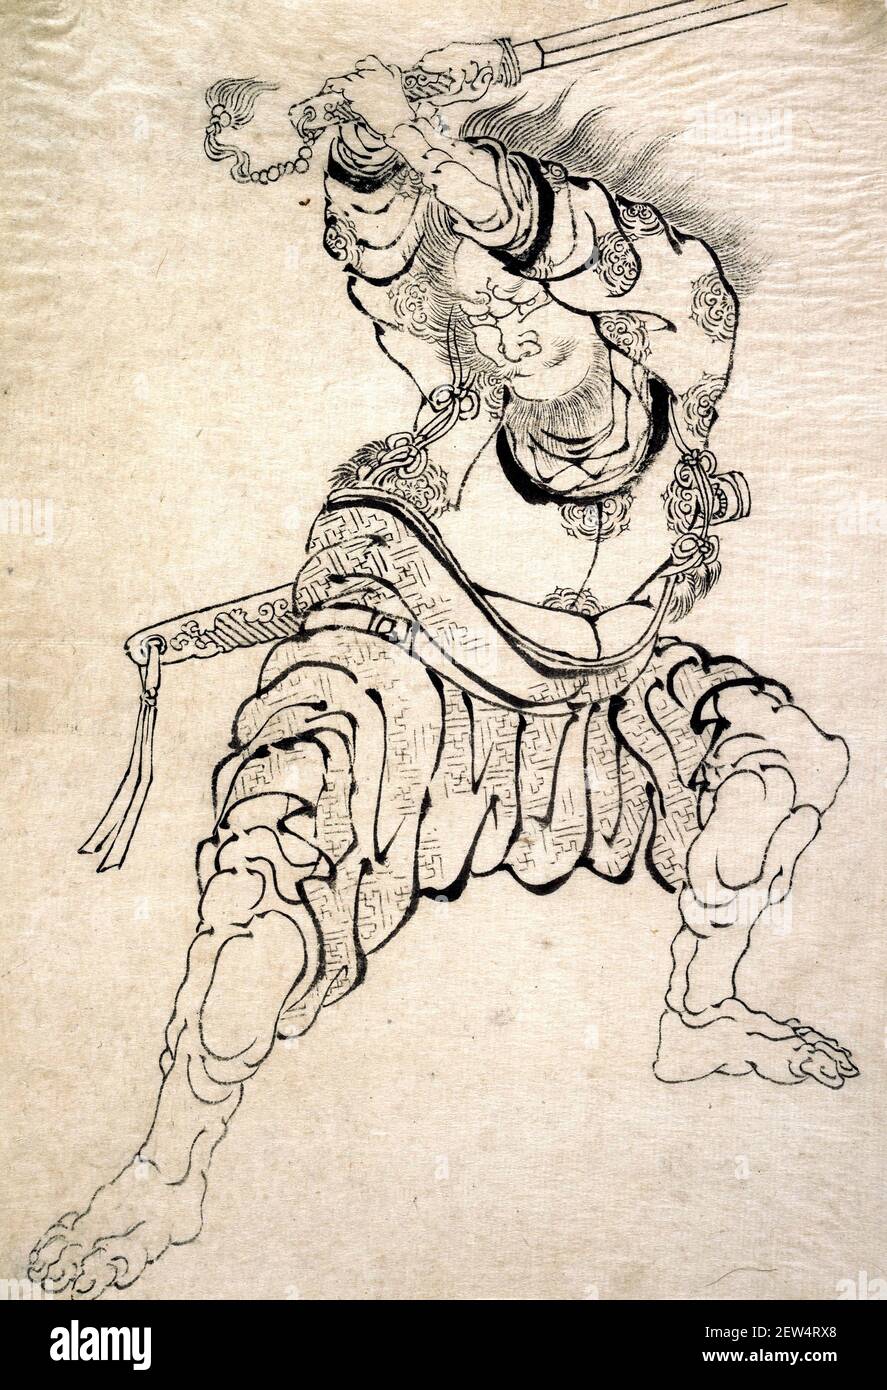 Hokusai. Un guerrier par l'artiste et graveur japonais Katsushika Hokusai (葛飾 北斎, c. 1760-1849), impression monochrome sur bois, encre sur papier Banque D'Images